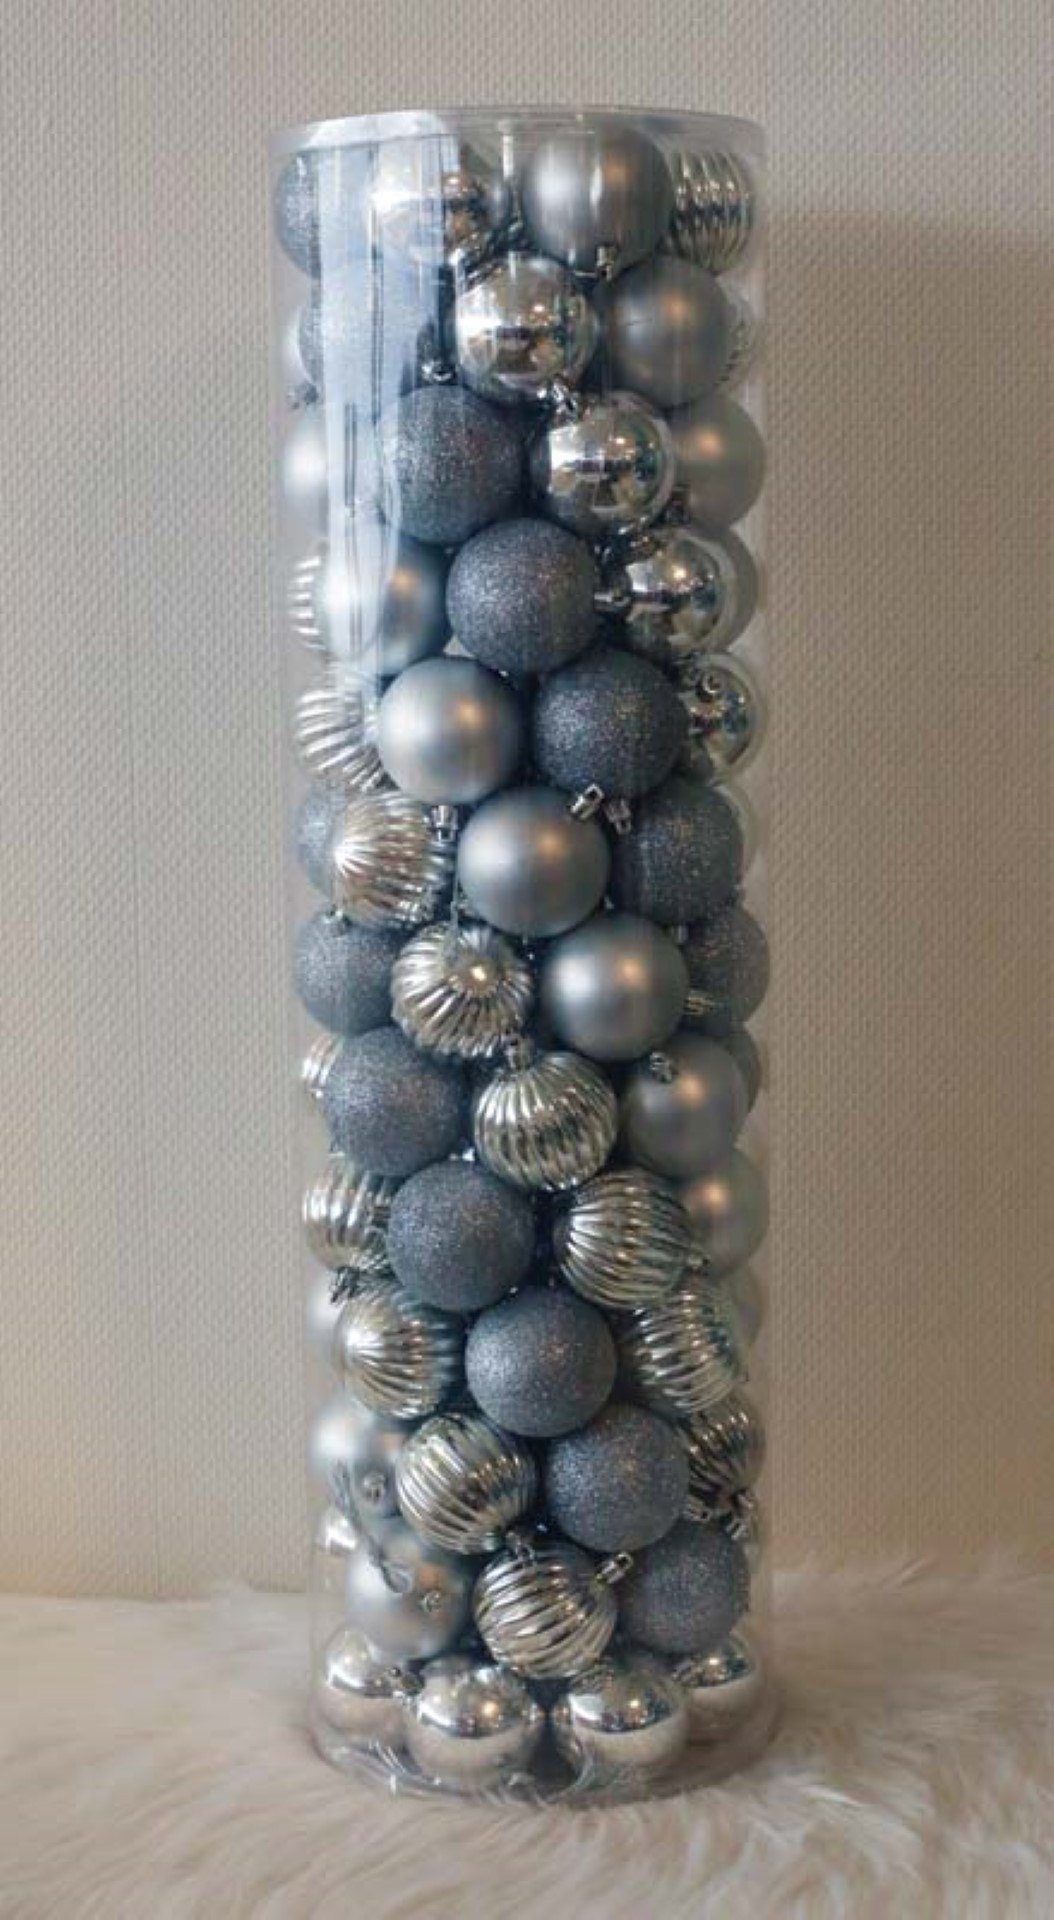 100 Onbreekbare kerstballen in koker doorsnee 6 cm zilver watermeloen - Oosterik Home